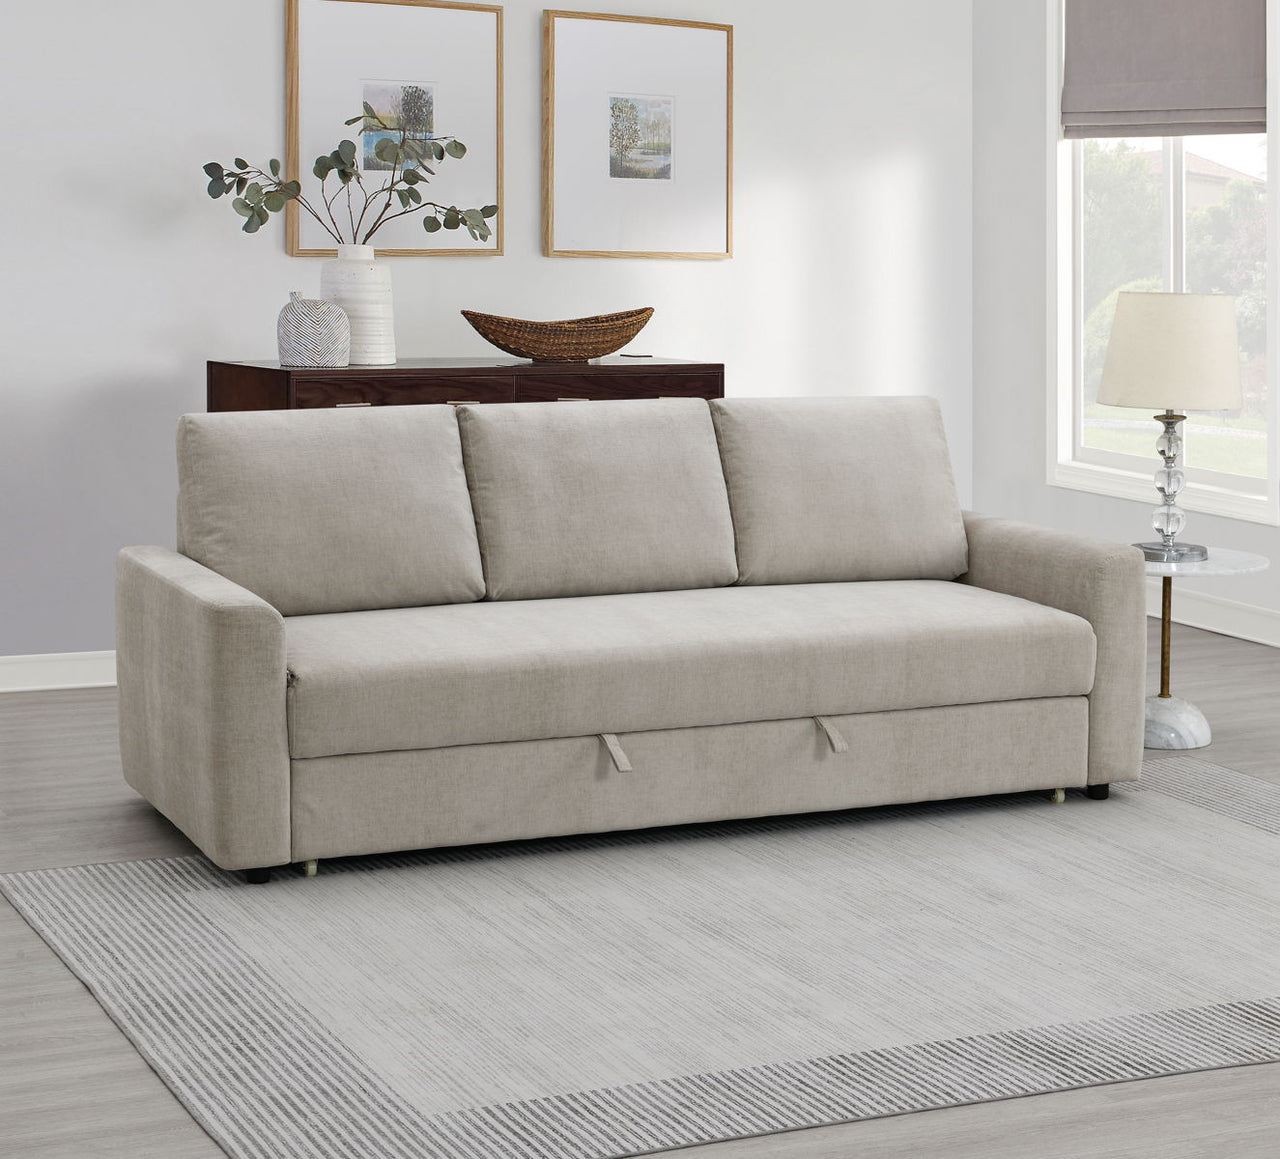 Haran - Sofa With Sleeper - Beige - Tony's Home Furnishings